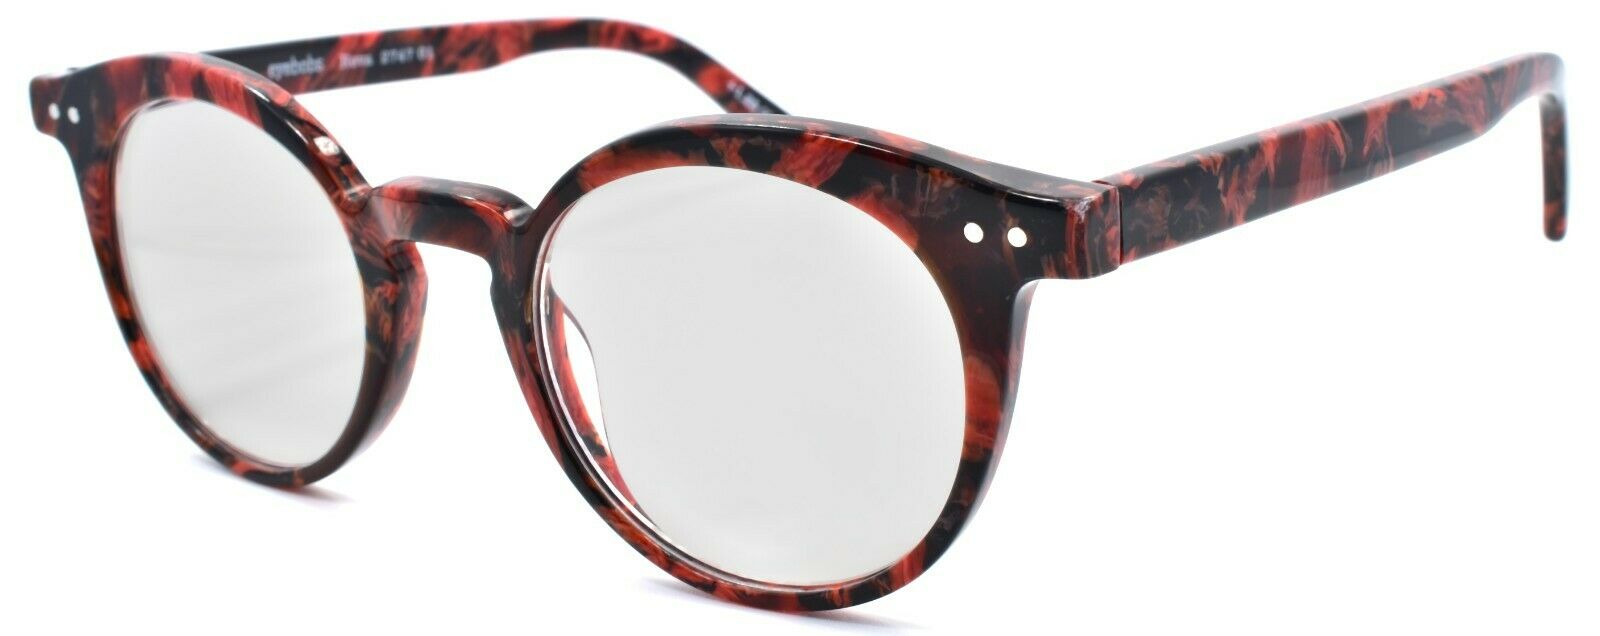 1-Eyebobs Reva 2747 01 Women's Reading Glasses Red Black Marble +1.25-842754161022-IKSpecs